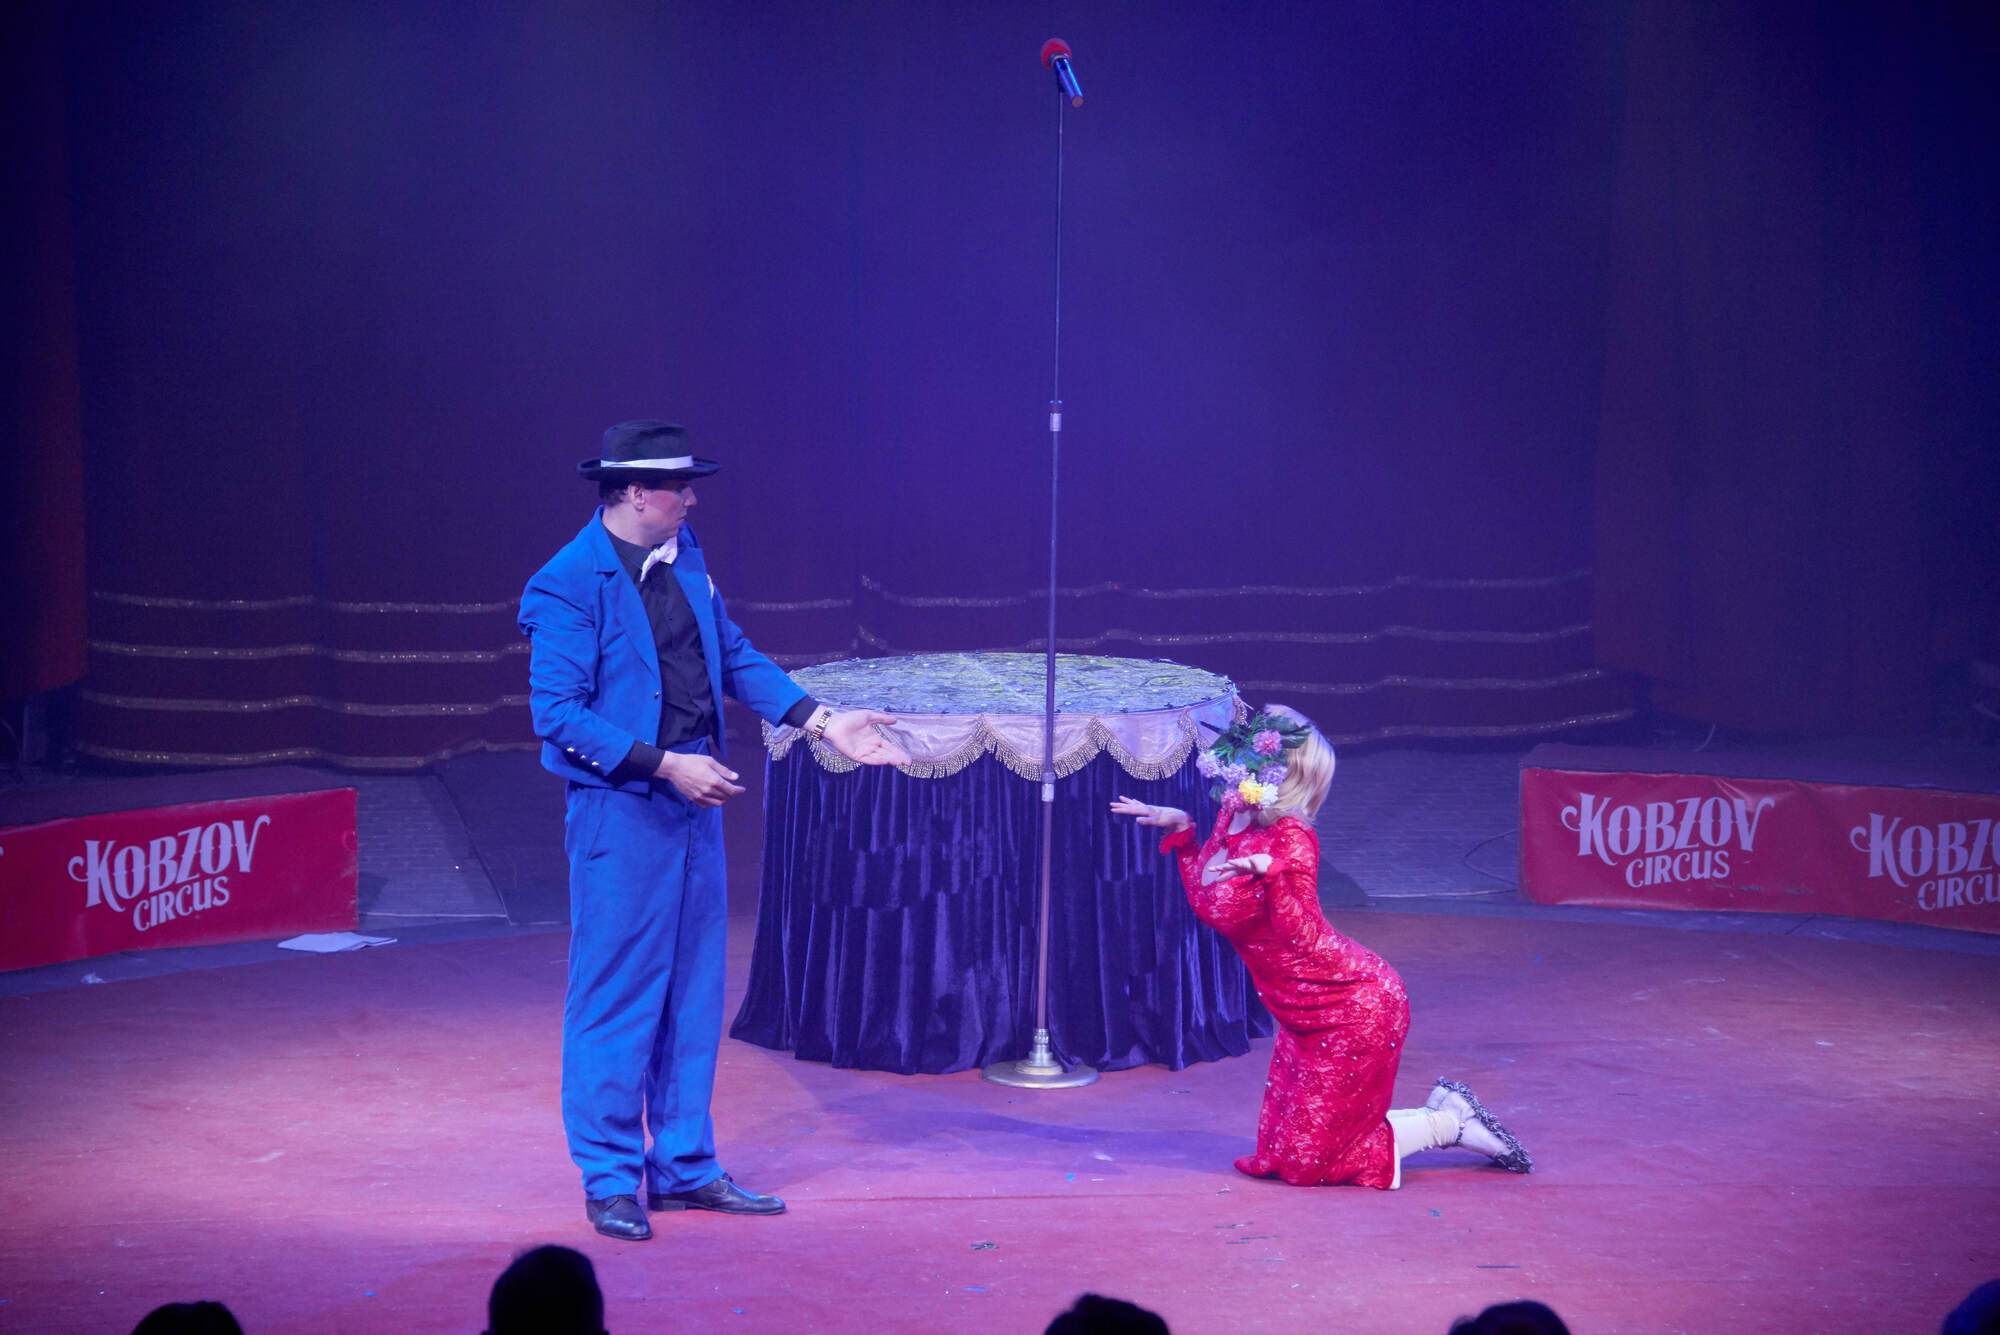 Звёзды циркового фестиваля "Золотой Трюк Кобзова" зажглись в Одессе